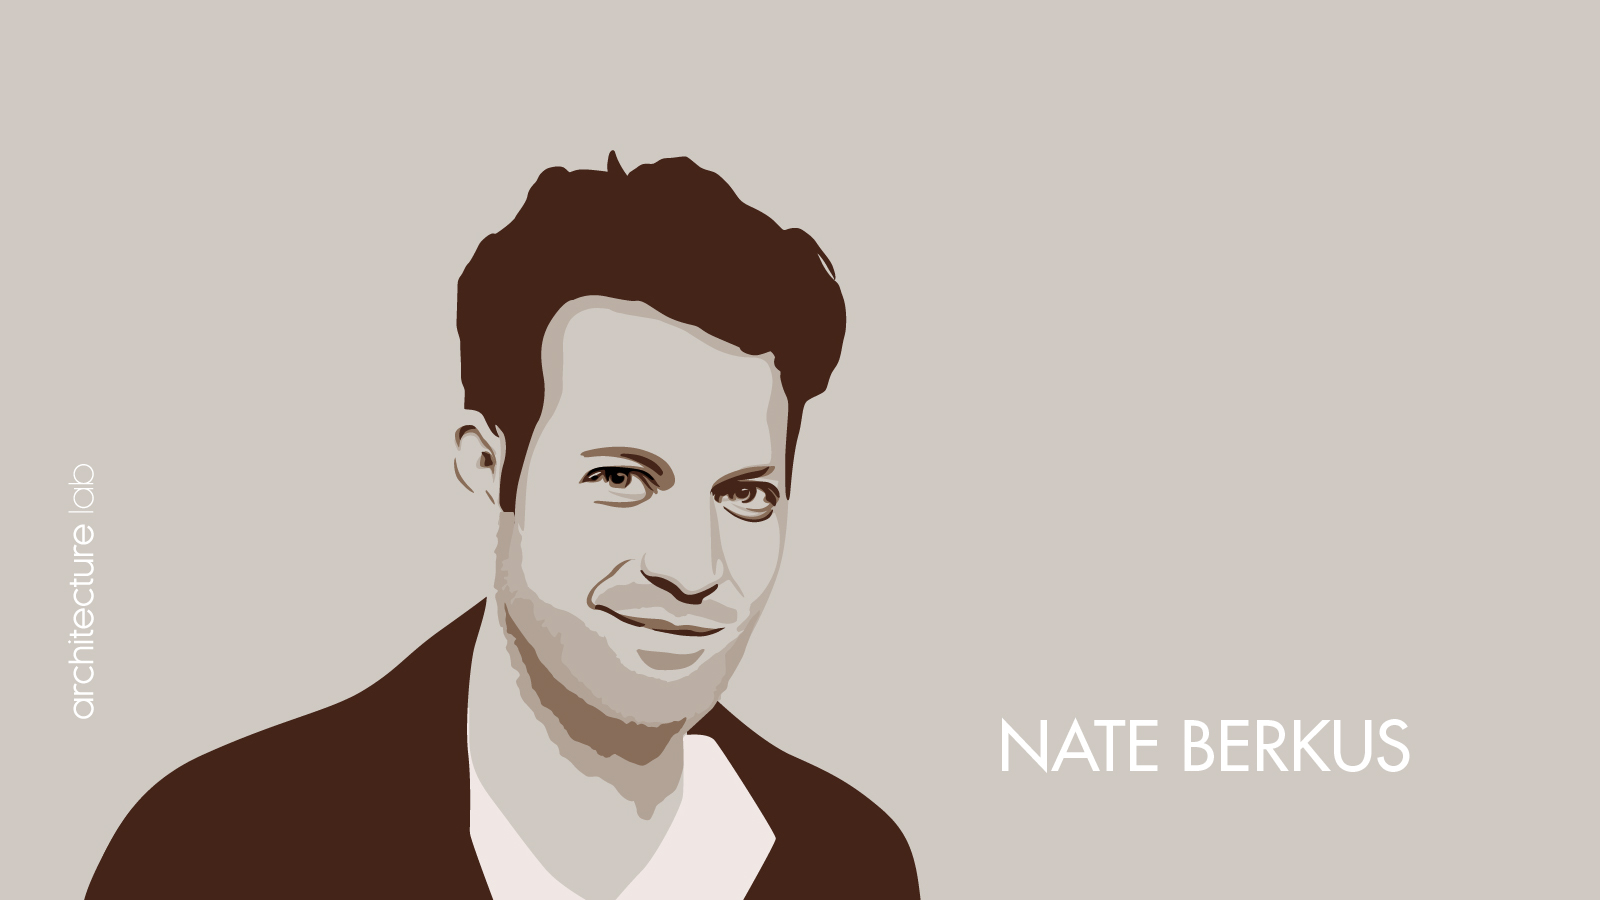 Nate berkus: biography, works, awards